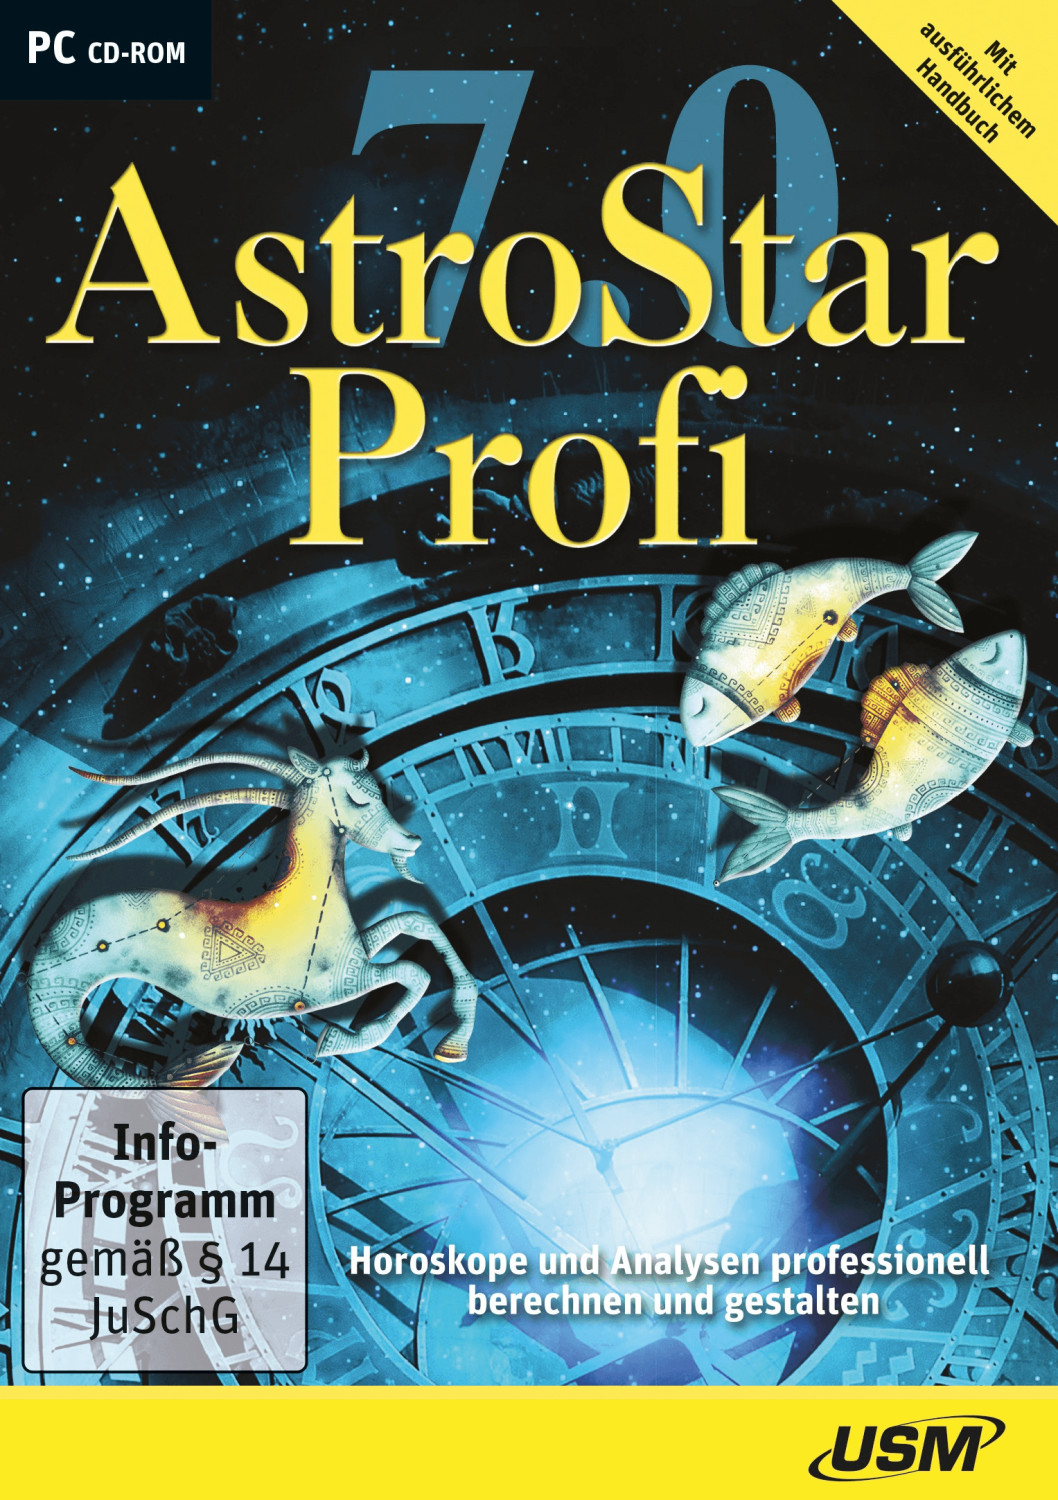 USM AstroStar Profi 7.0 ab 49,99 € Preisvergleich bei idealo.de